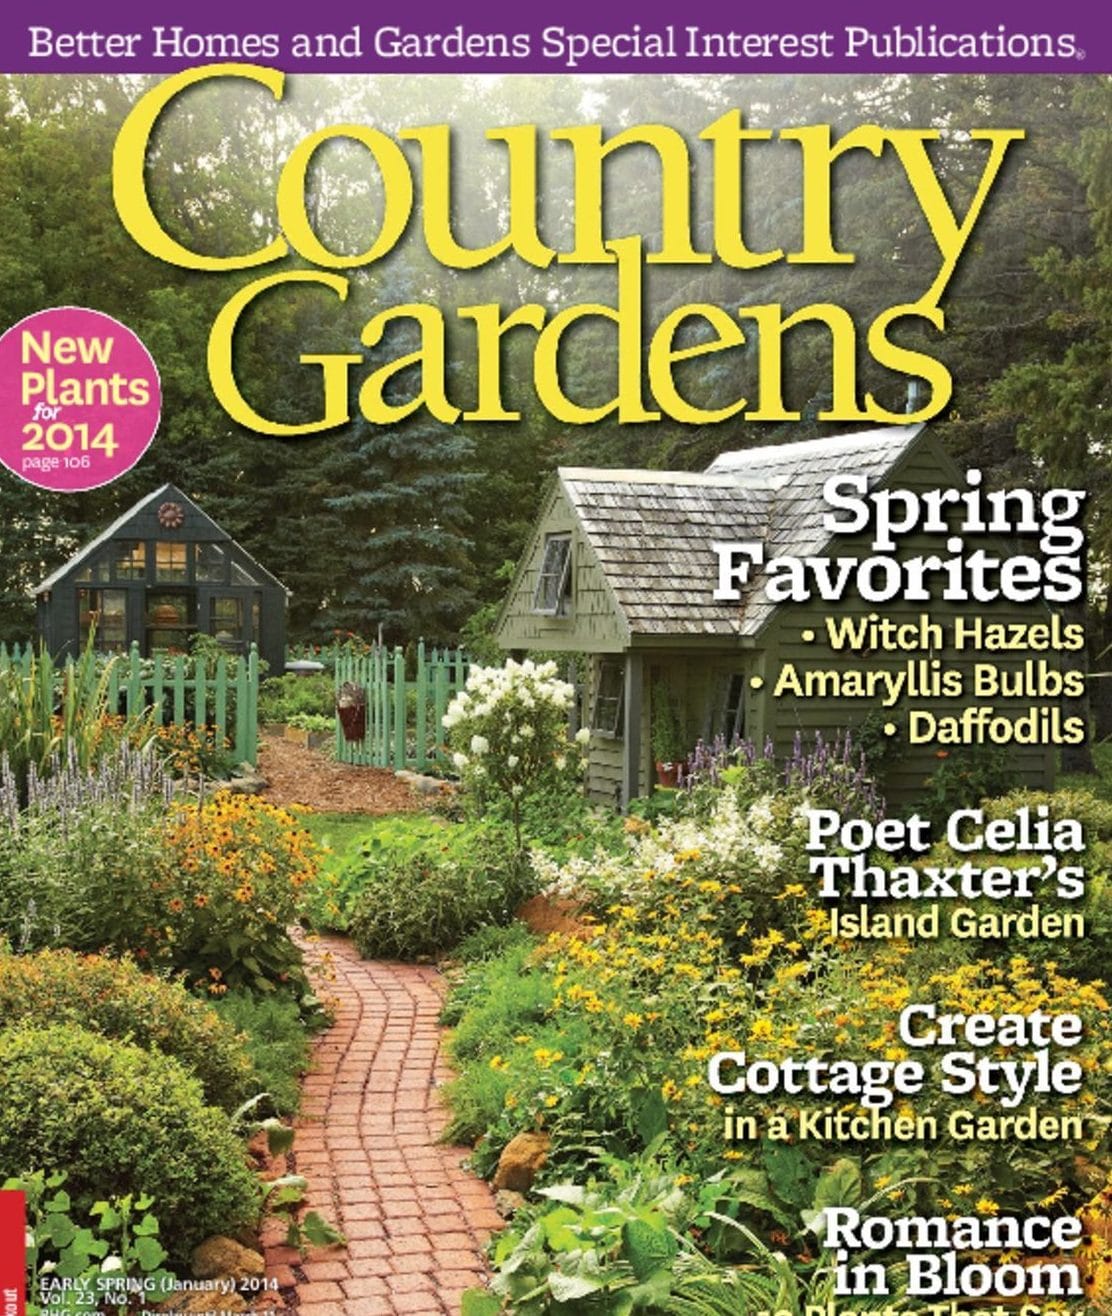 Best Garden Magazine Image